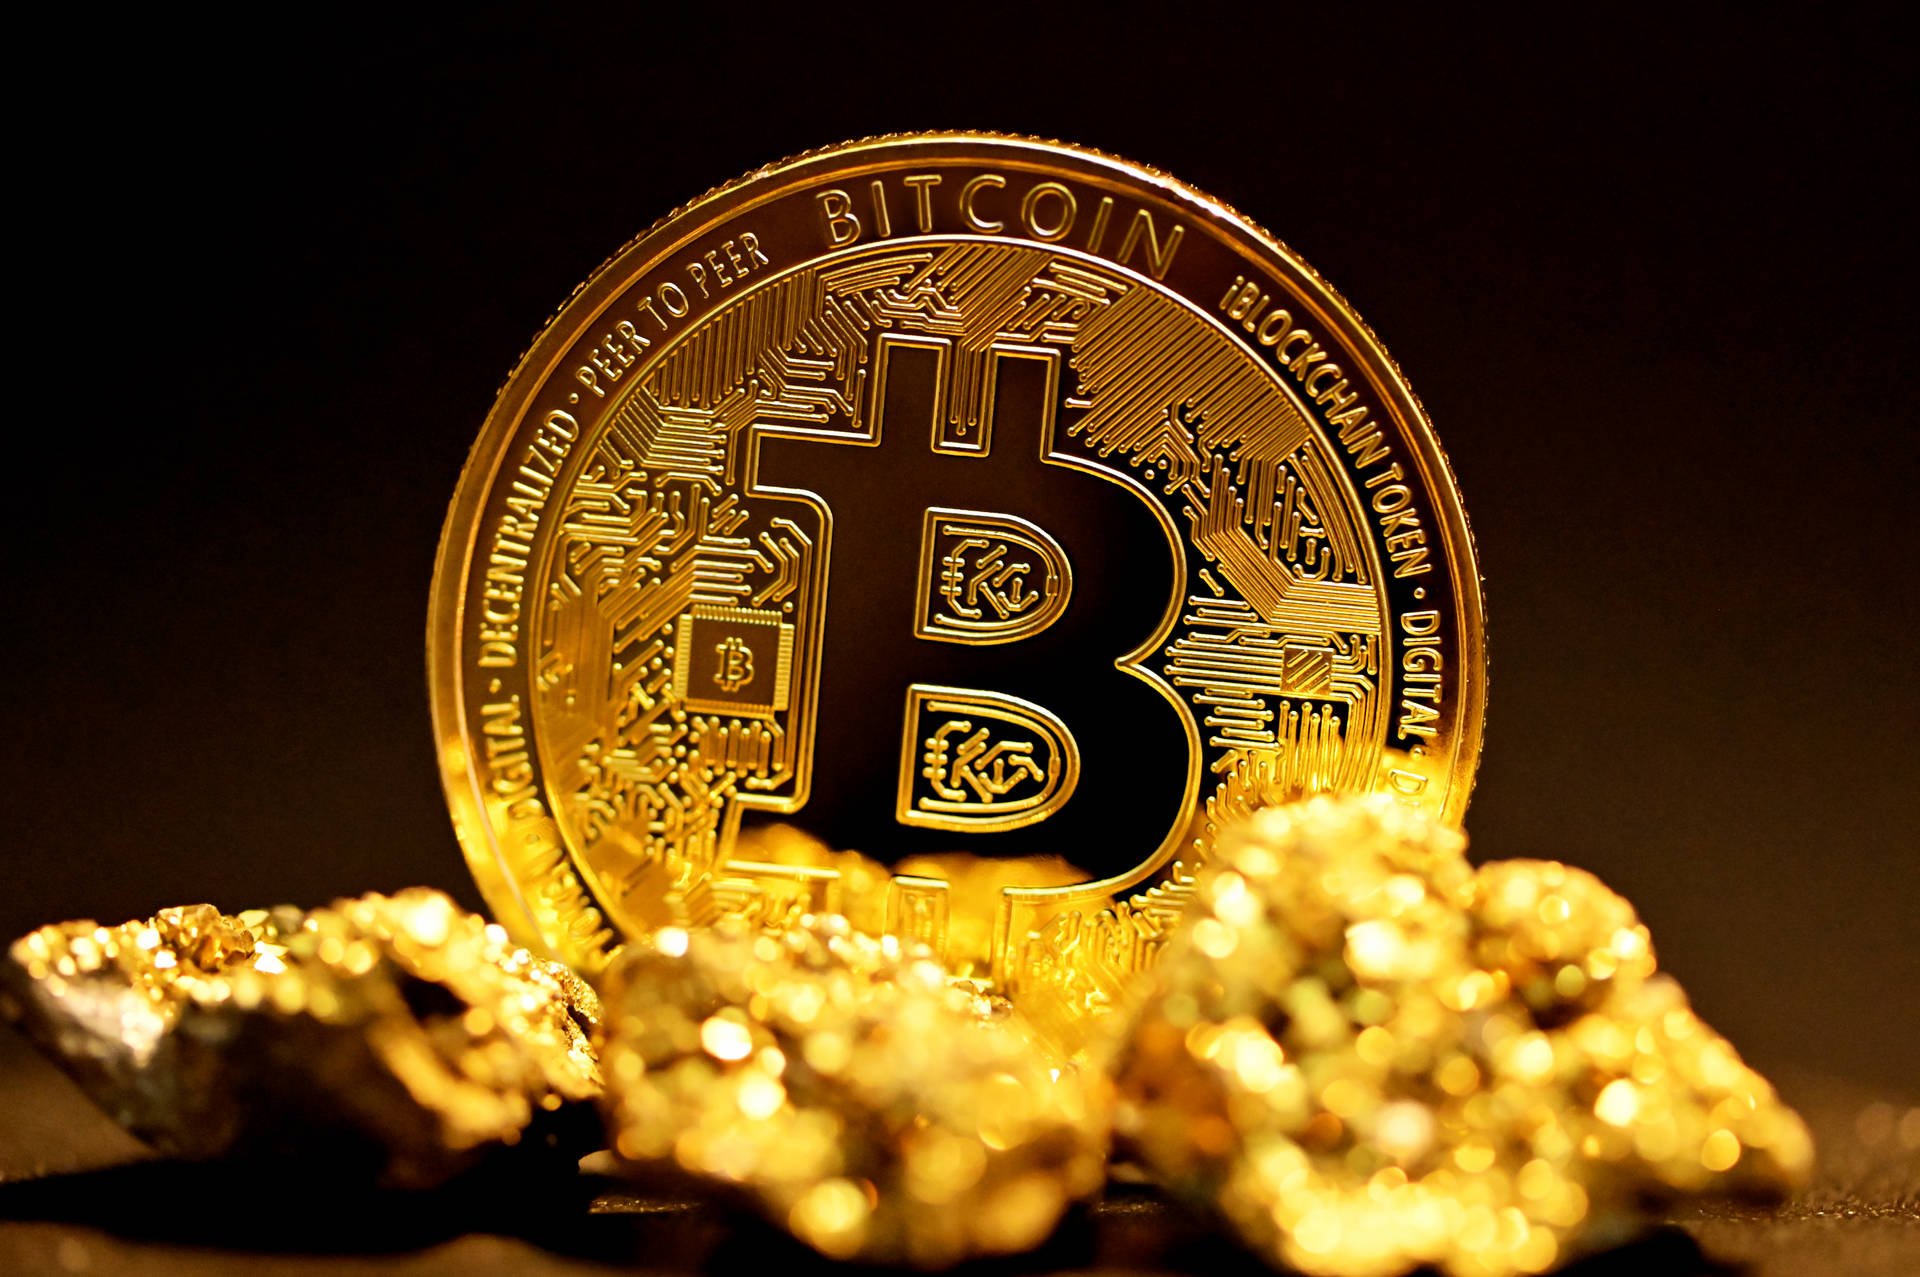 Brilliant Gold Bitcoin Wallpaper